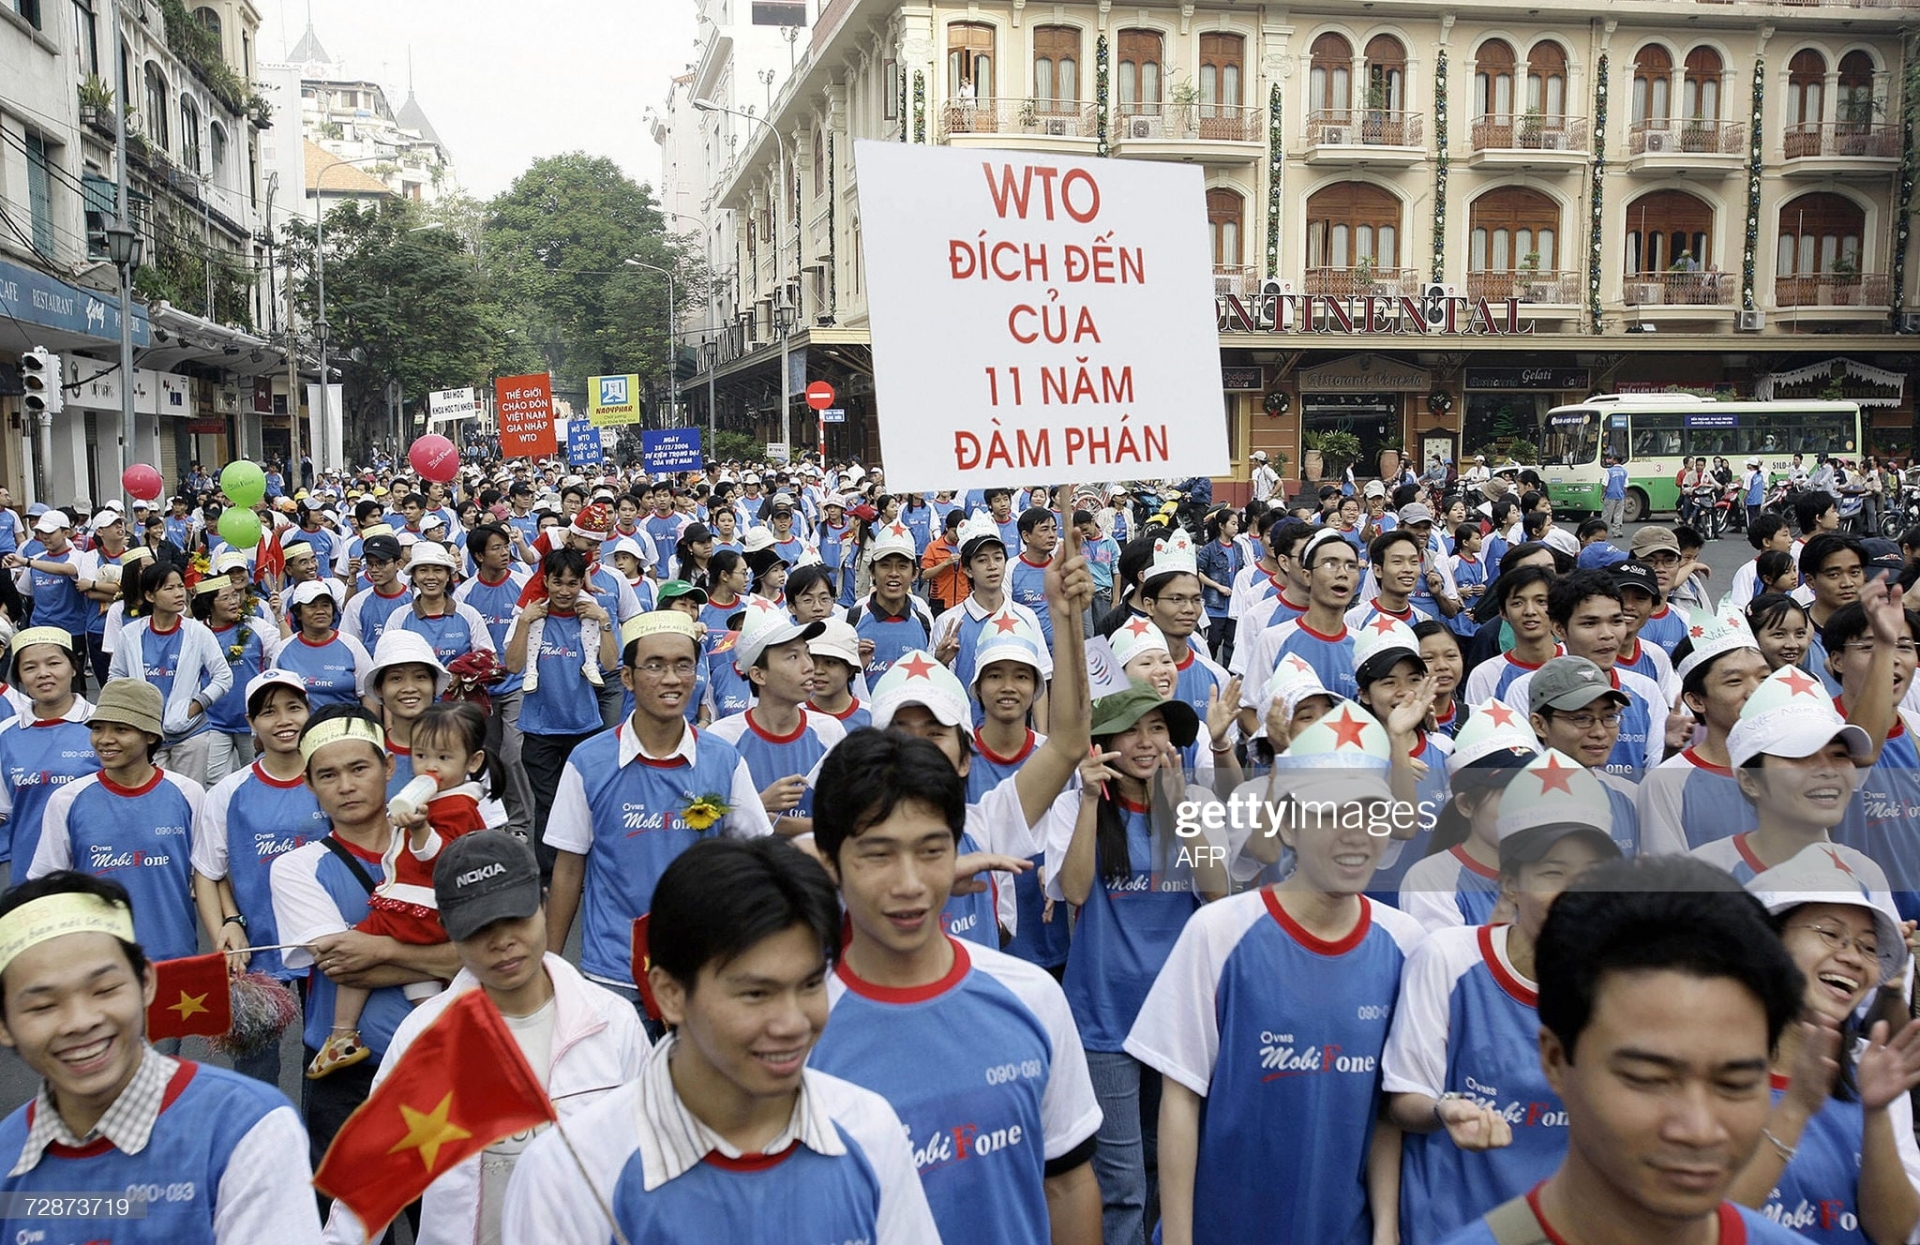 Buổi diễu hành ngày 24/12/2006 đánh dấu việc Việt Nam hoàn thành các cuộc đàm phán để gia nhập Tổ chức Thương mại Thế giới (World Trade Organization). Việt Nam chính thức vào WTO vào ngày 11/1/2007.